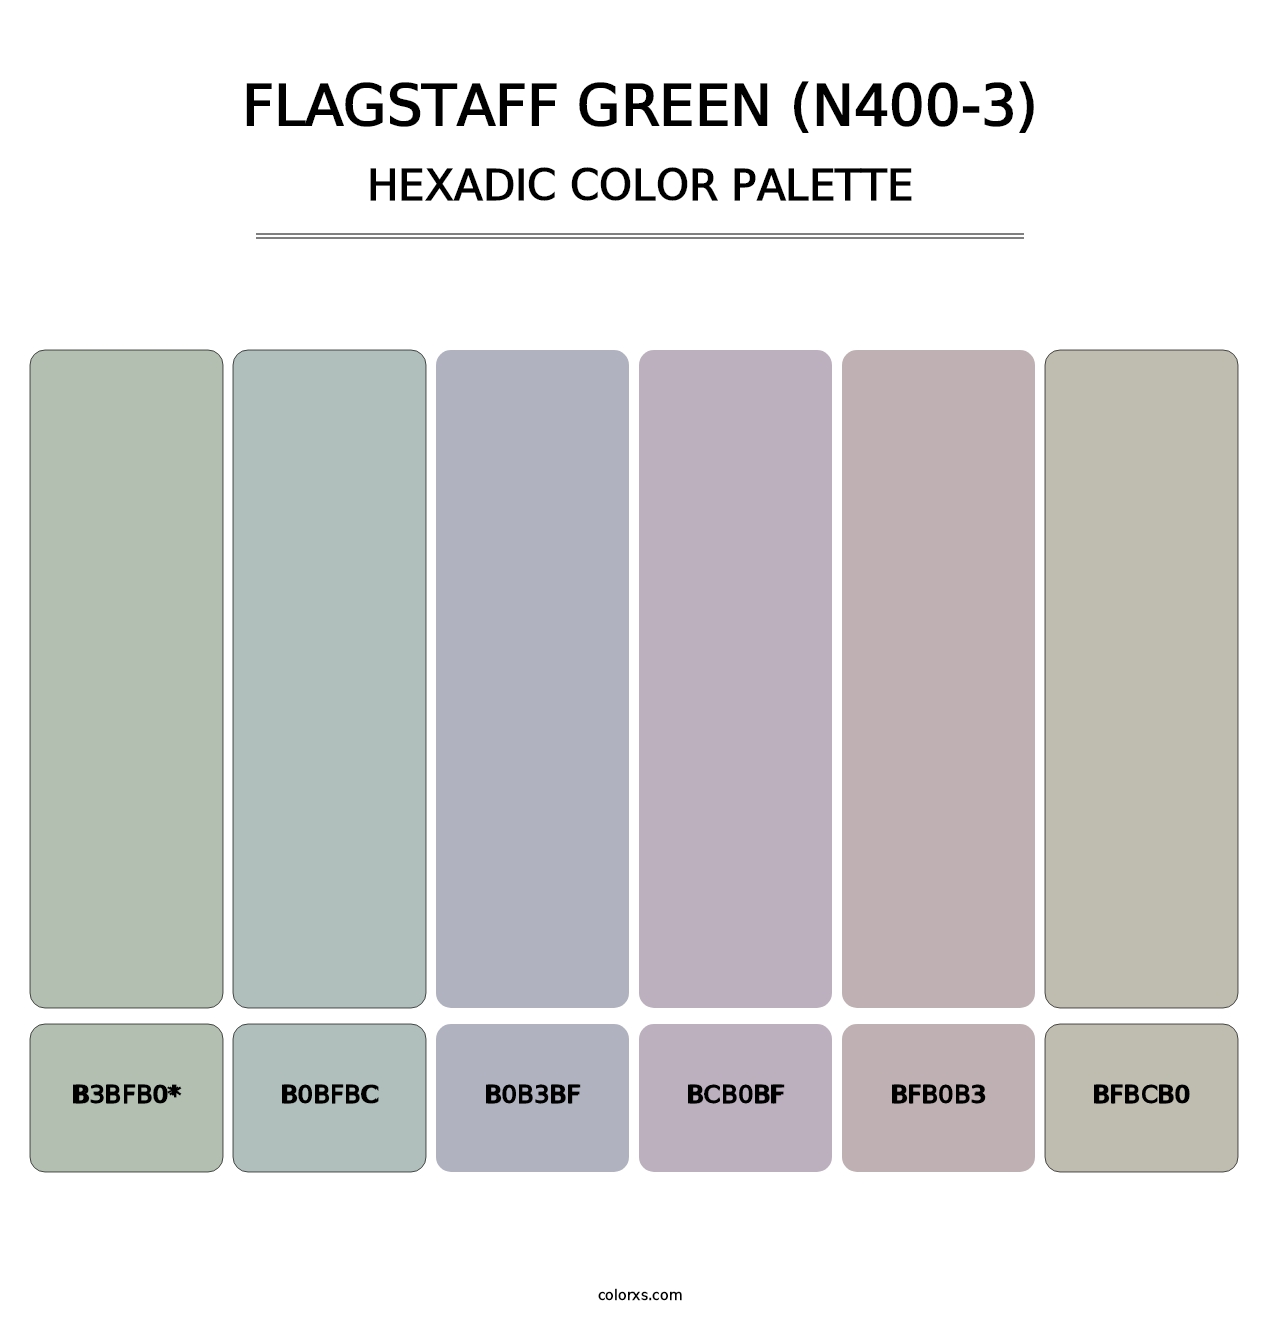 Flagstaff Green (N400-3) - Hexadic Color Palette